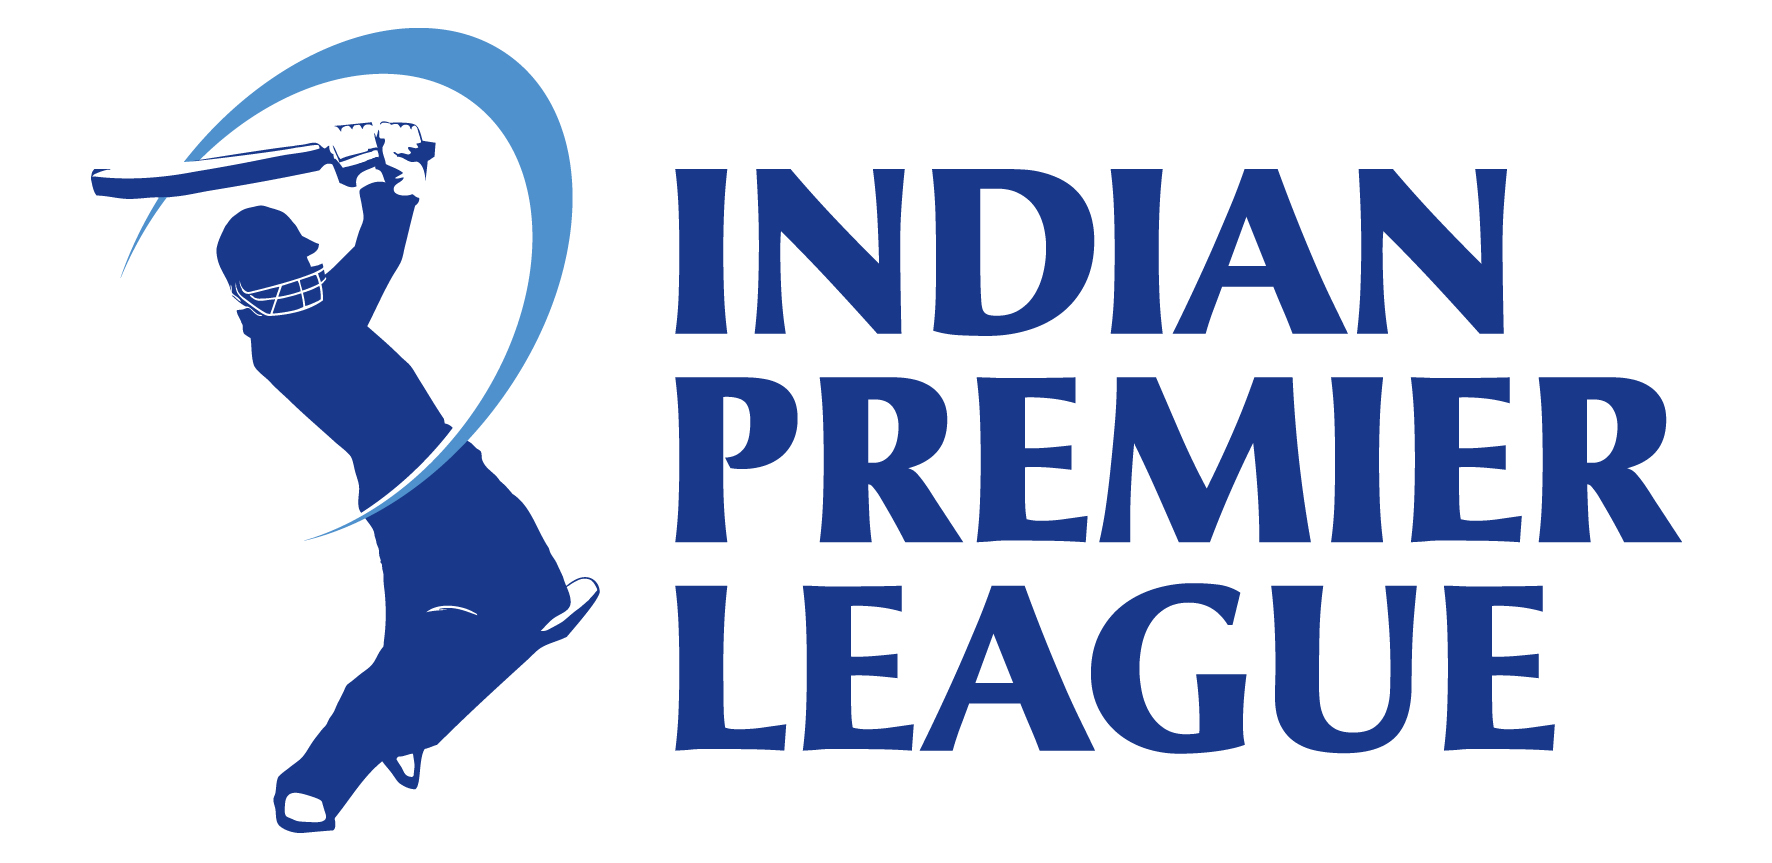 About IPL (Indian Premier League)